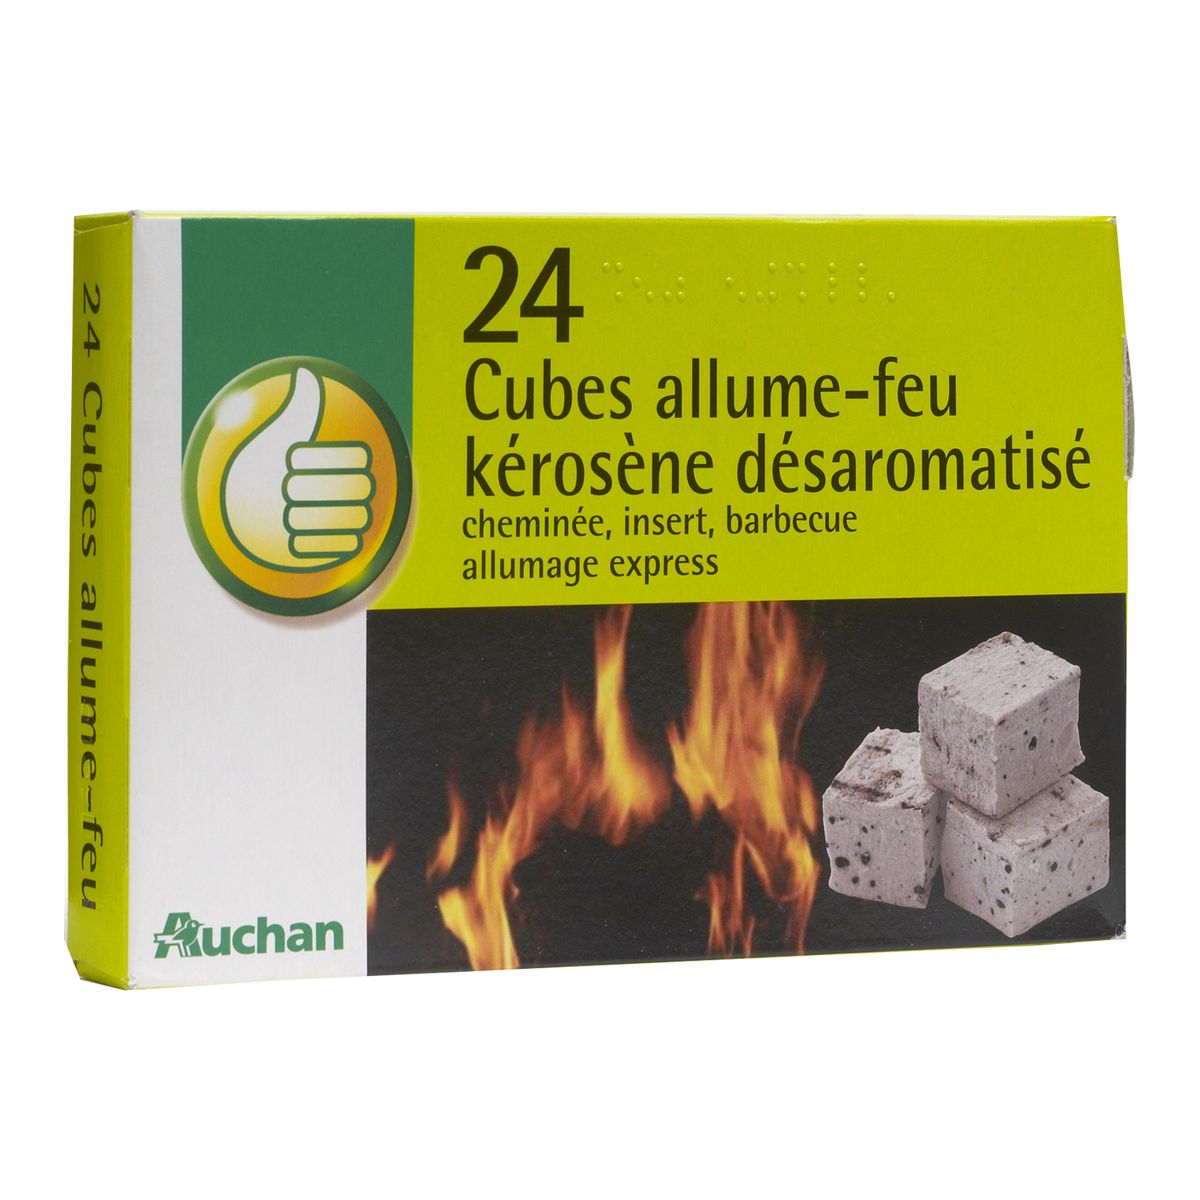 POUCE Allume-feu en cubes au kérosène désaromatisé 24 cubes pas cher 